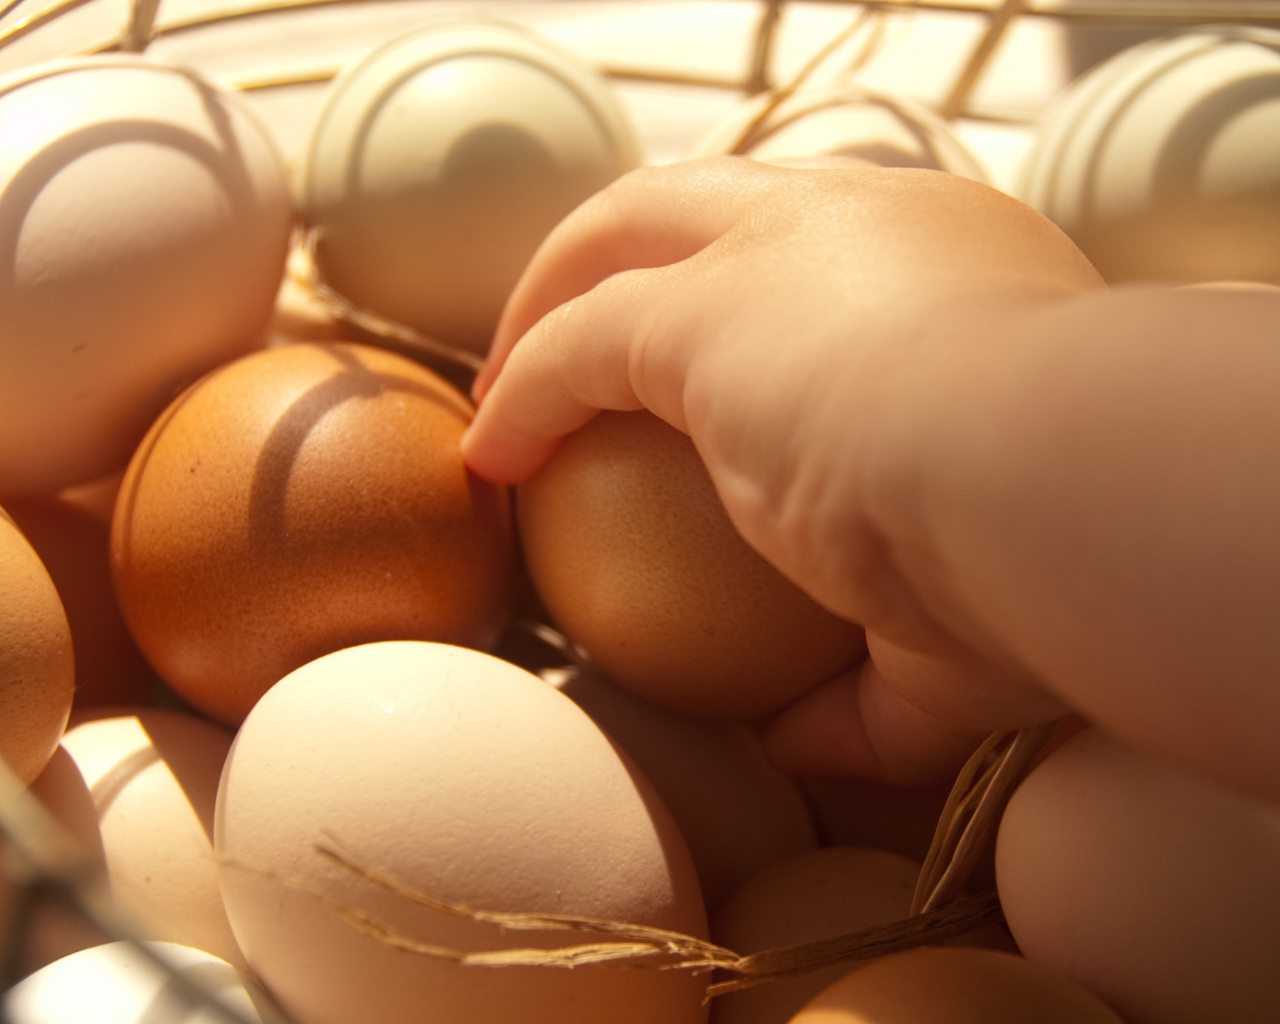 Crean “súper huevos” a partir de nuevo alimento para gallinas